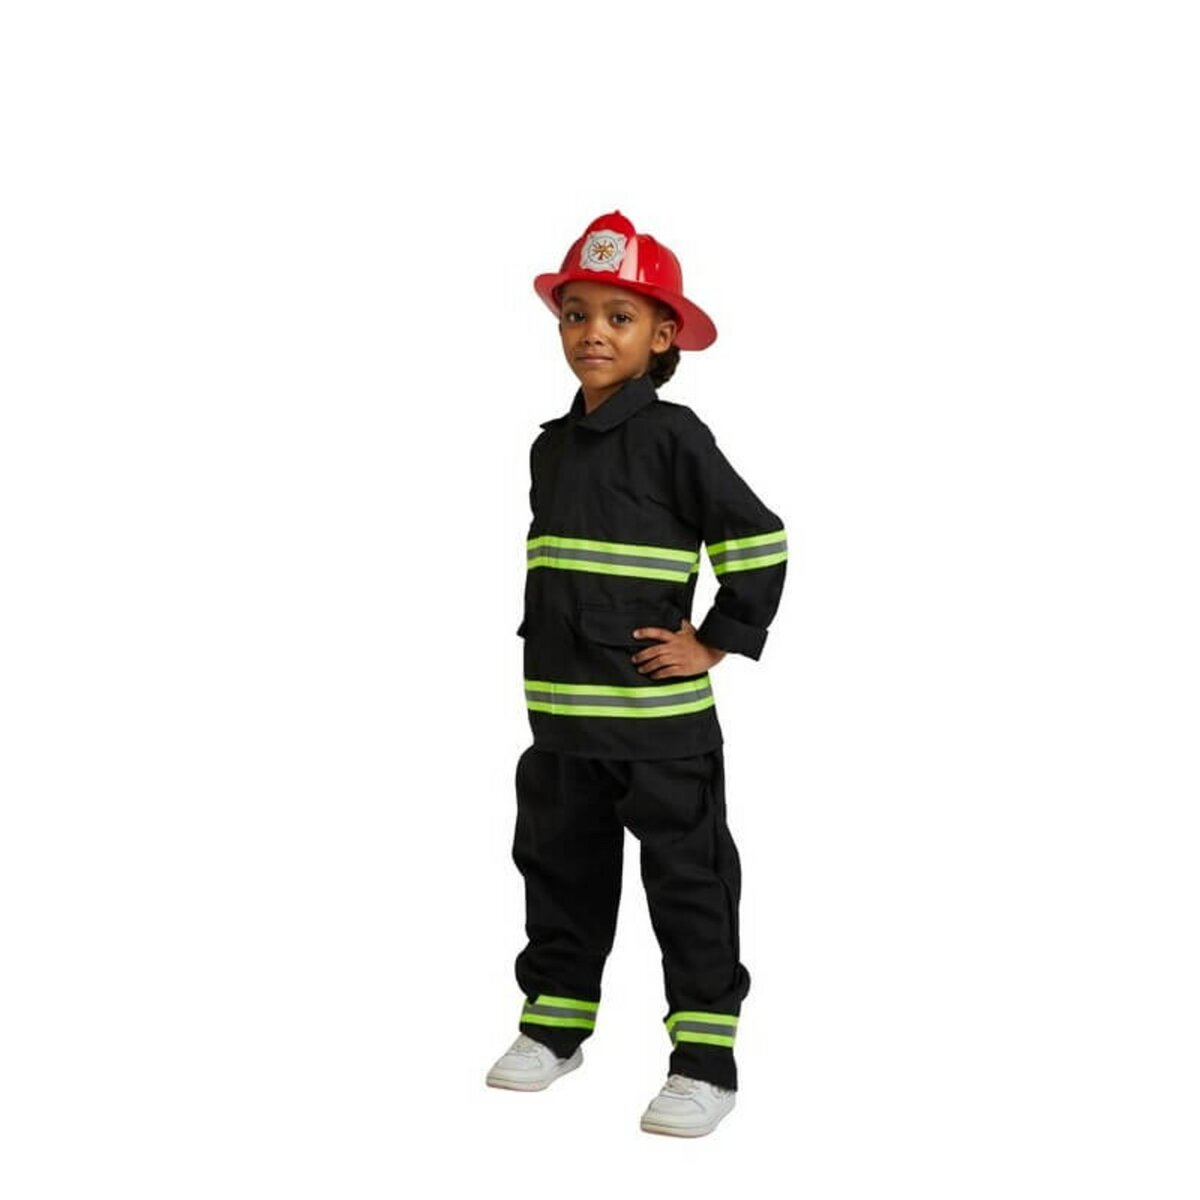 PICWICTOYS Déguisement - Pompier - Taille M (5-7 ans) pas cher